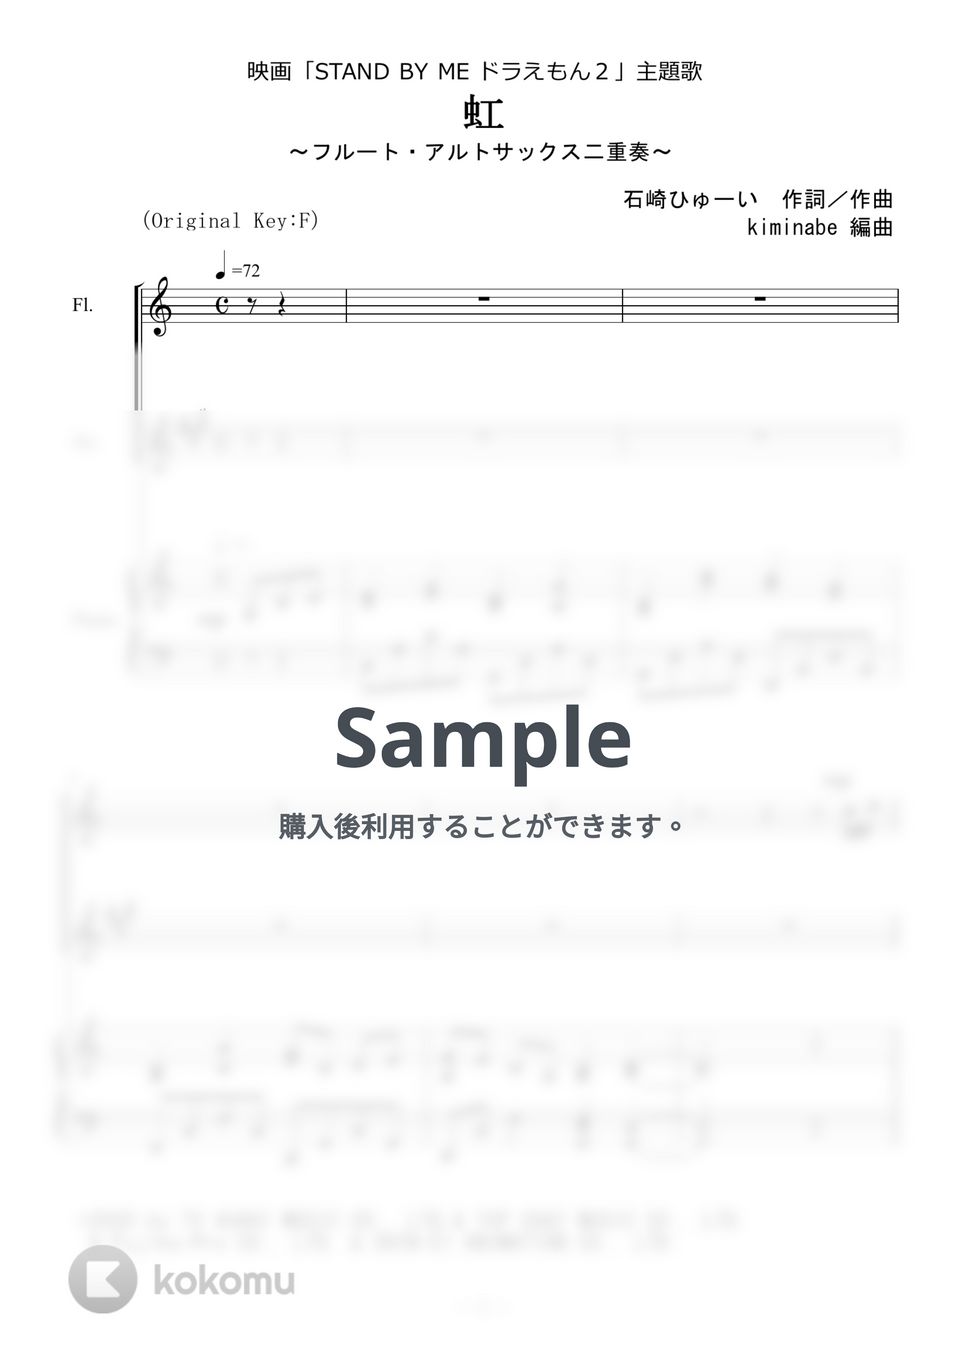 菅田将暉 - 虹 (フルート・アルトサックス二重奏) by kiminabe